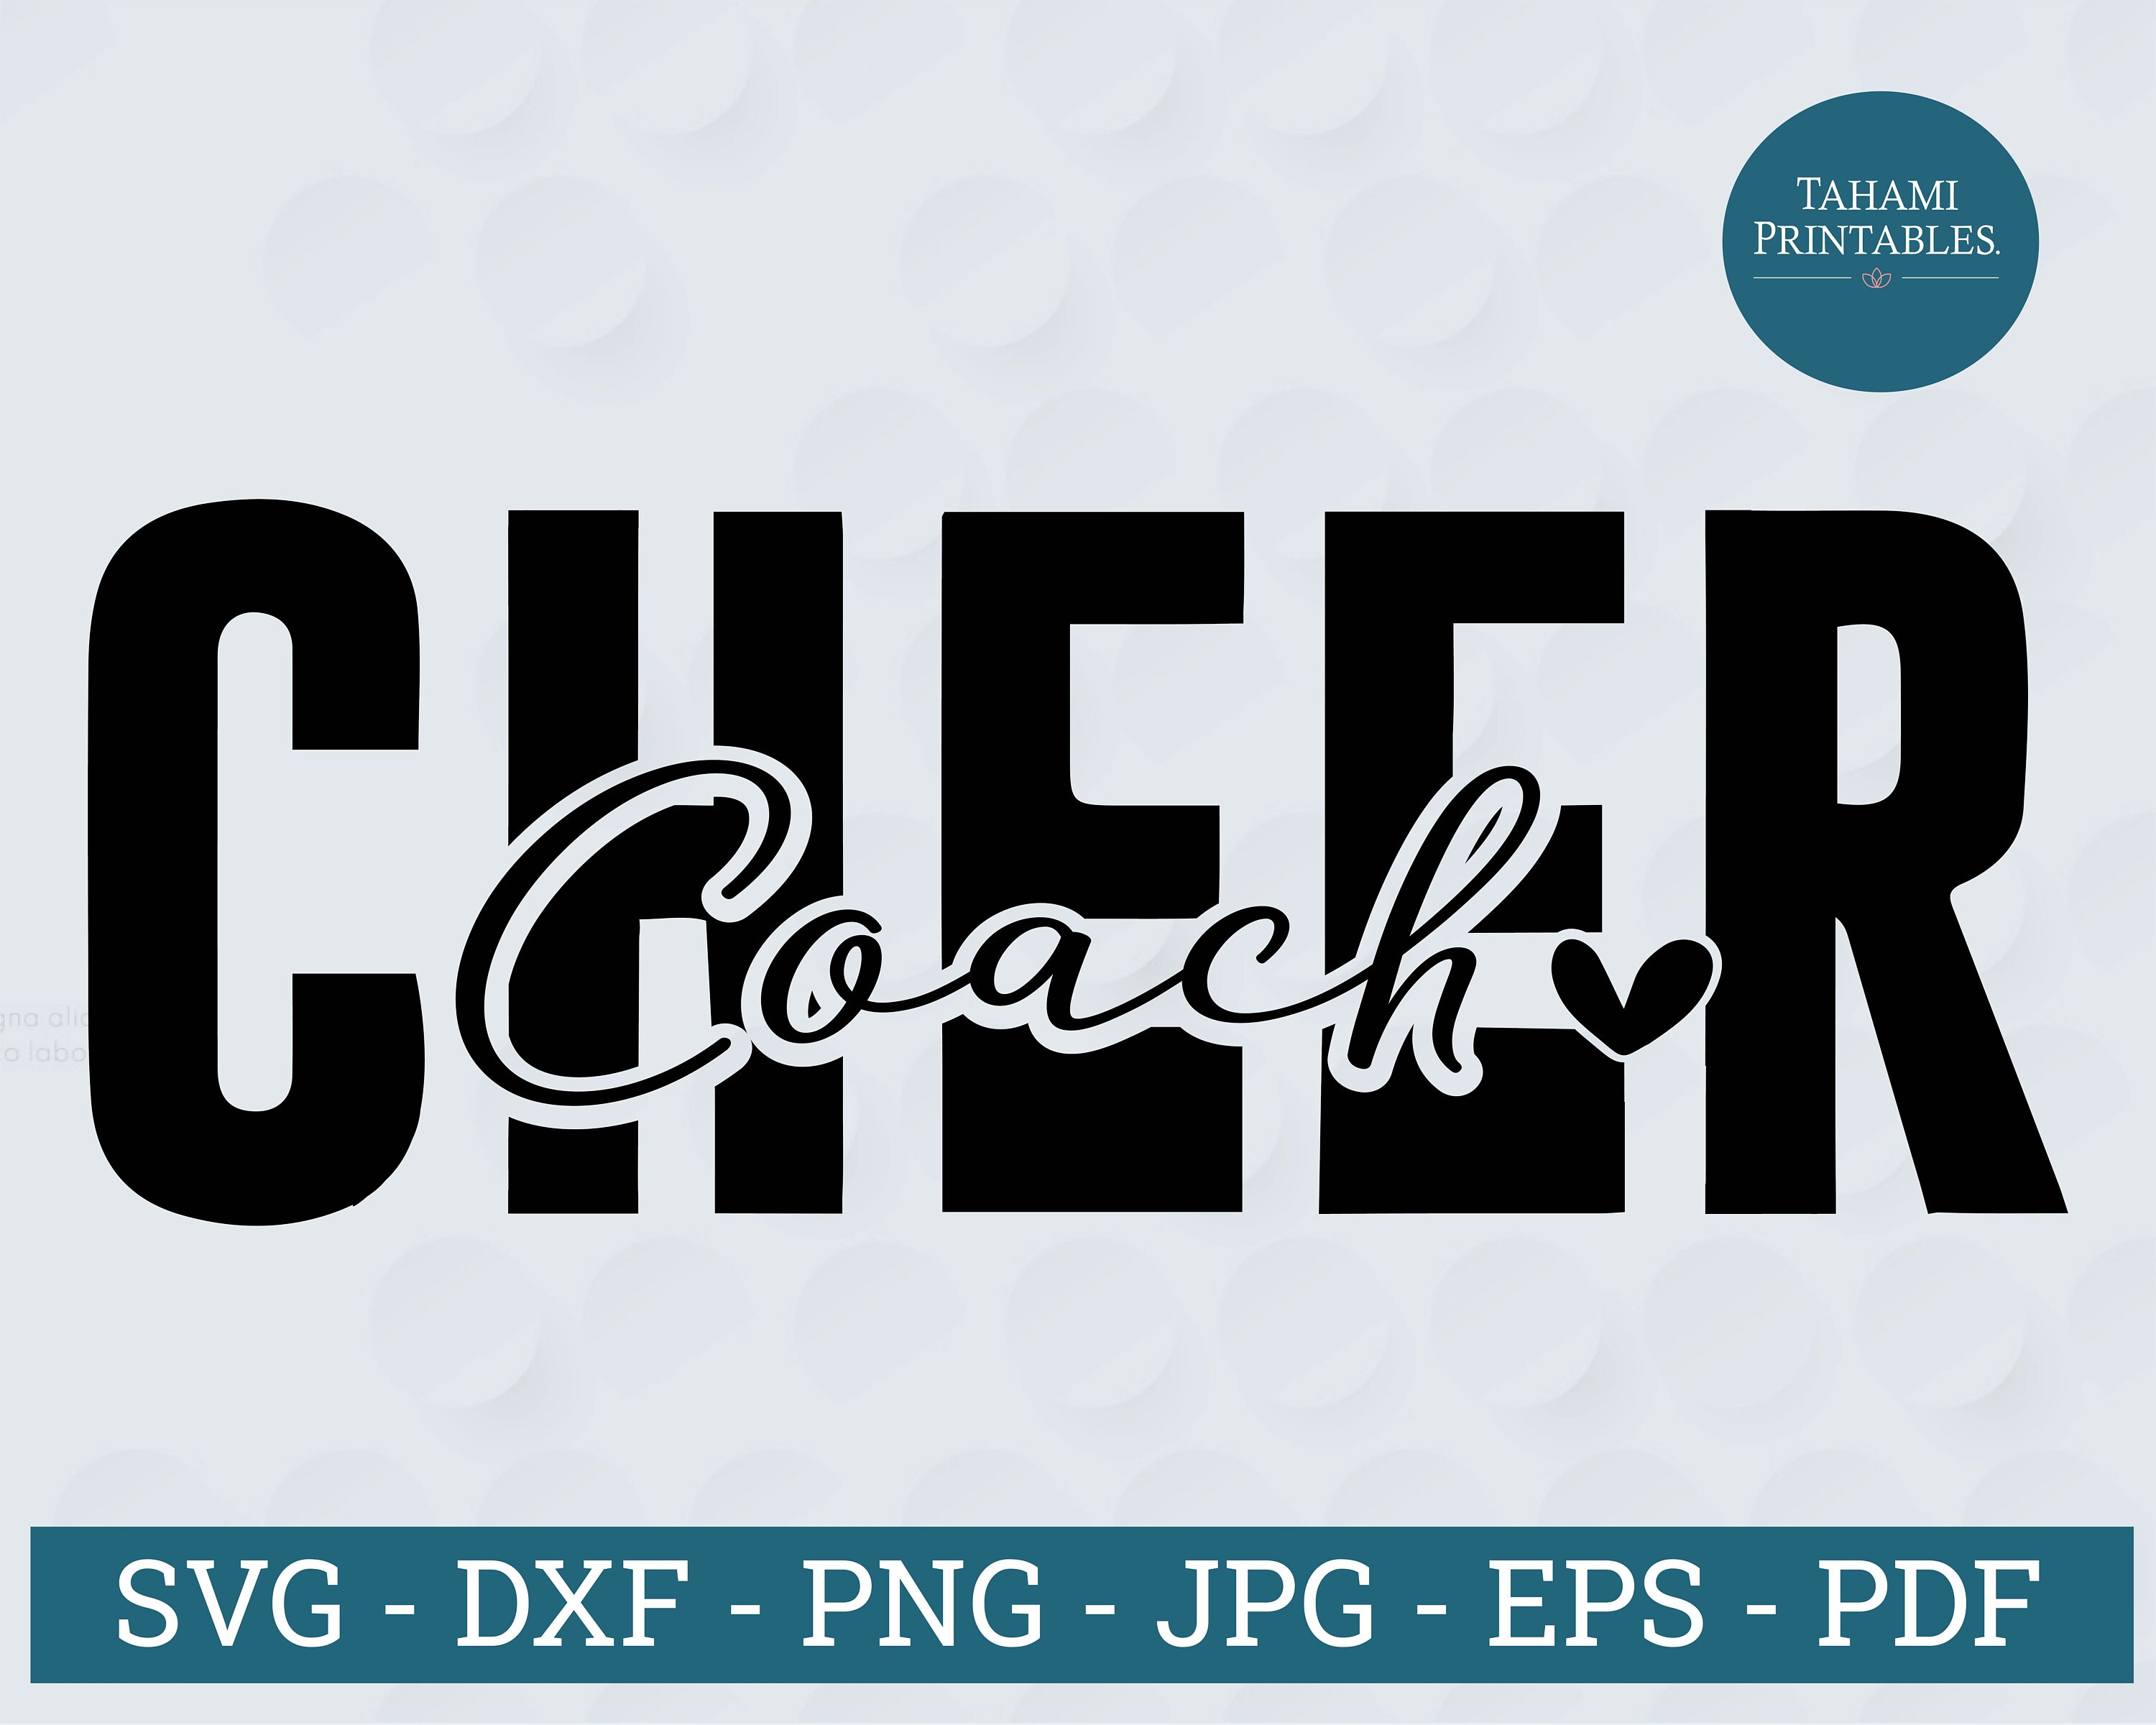 Cheer Coach Svg Cheer Coach Png Cheer Coach Cheer Coach - Etsy UK